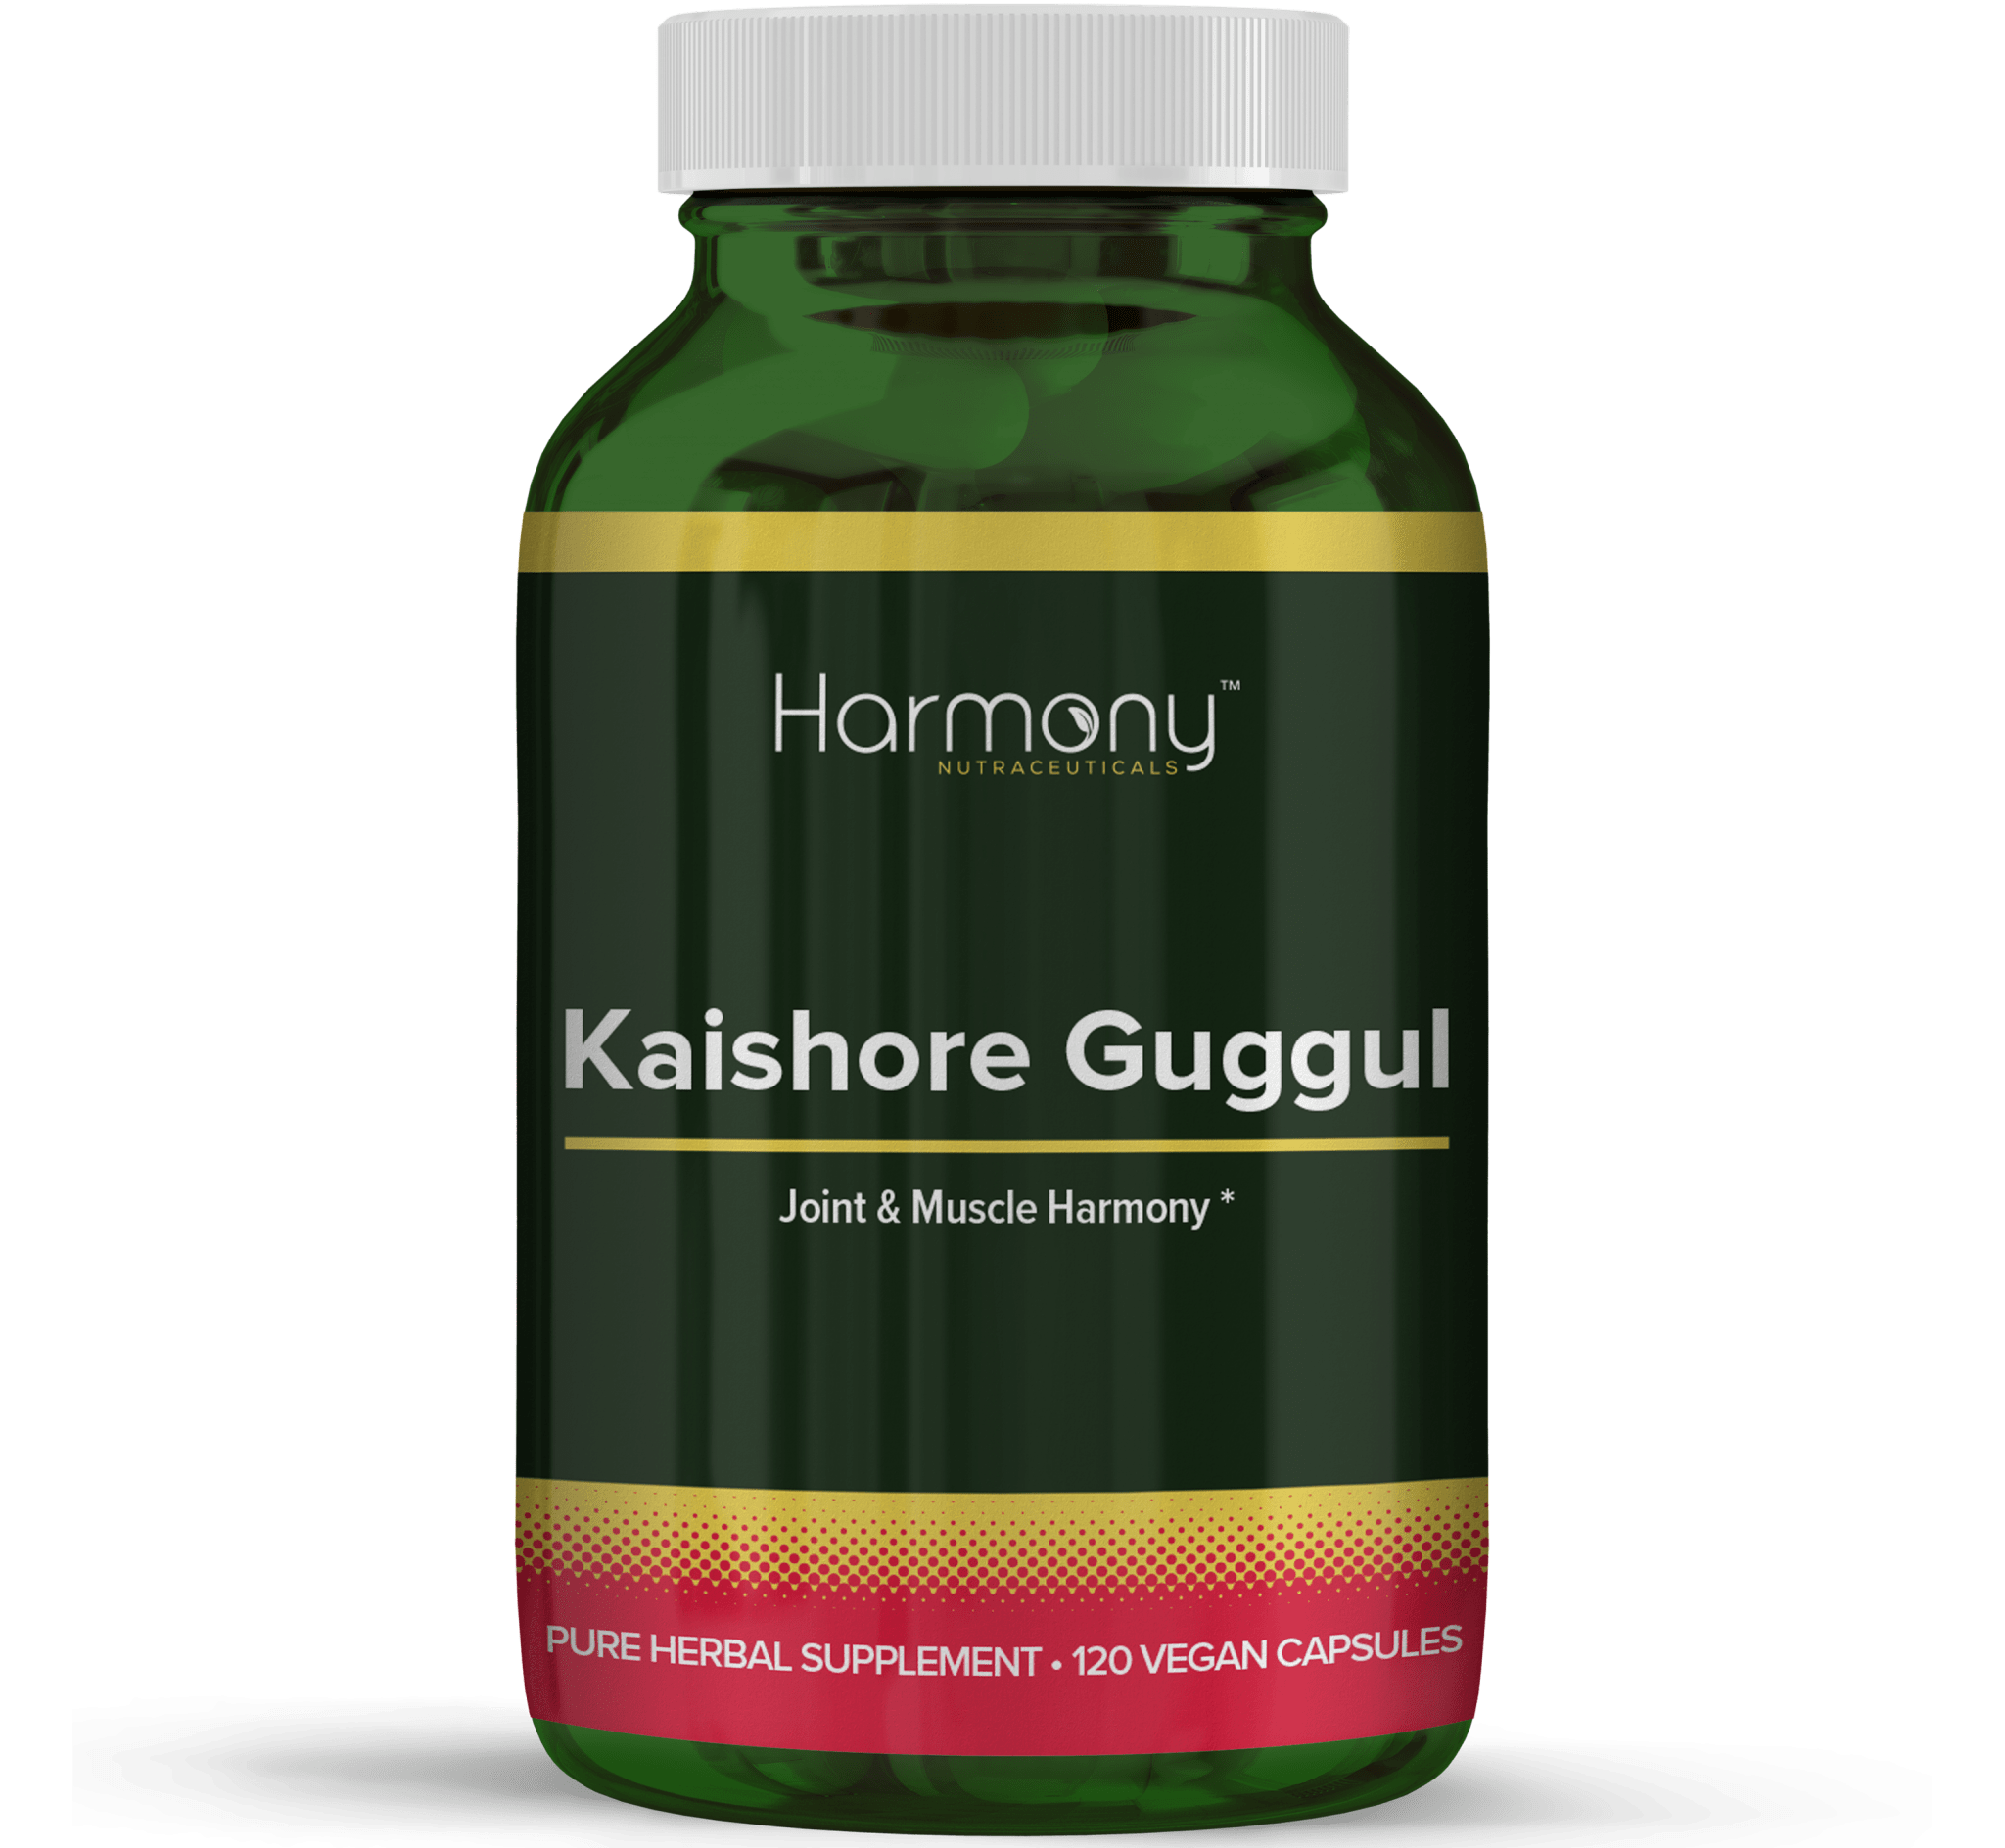 Kaishore Guggul Pure Herbal Supplement- 120 Vegan Capsules from Harmony Veda,USA